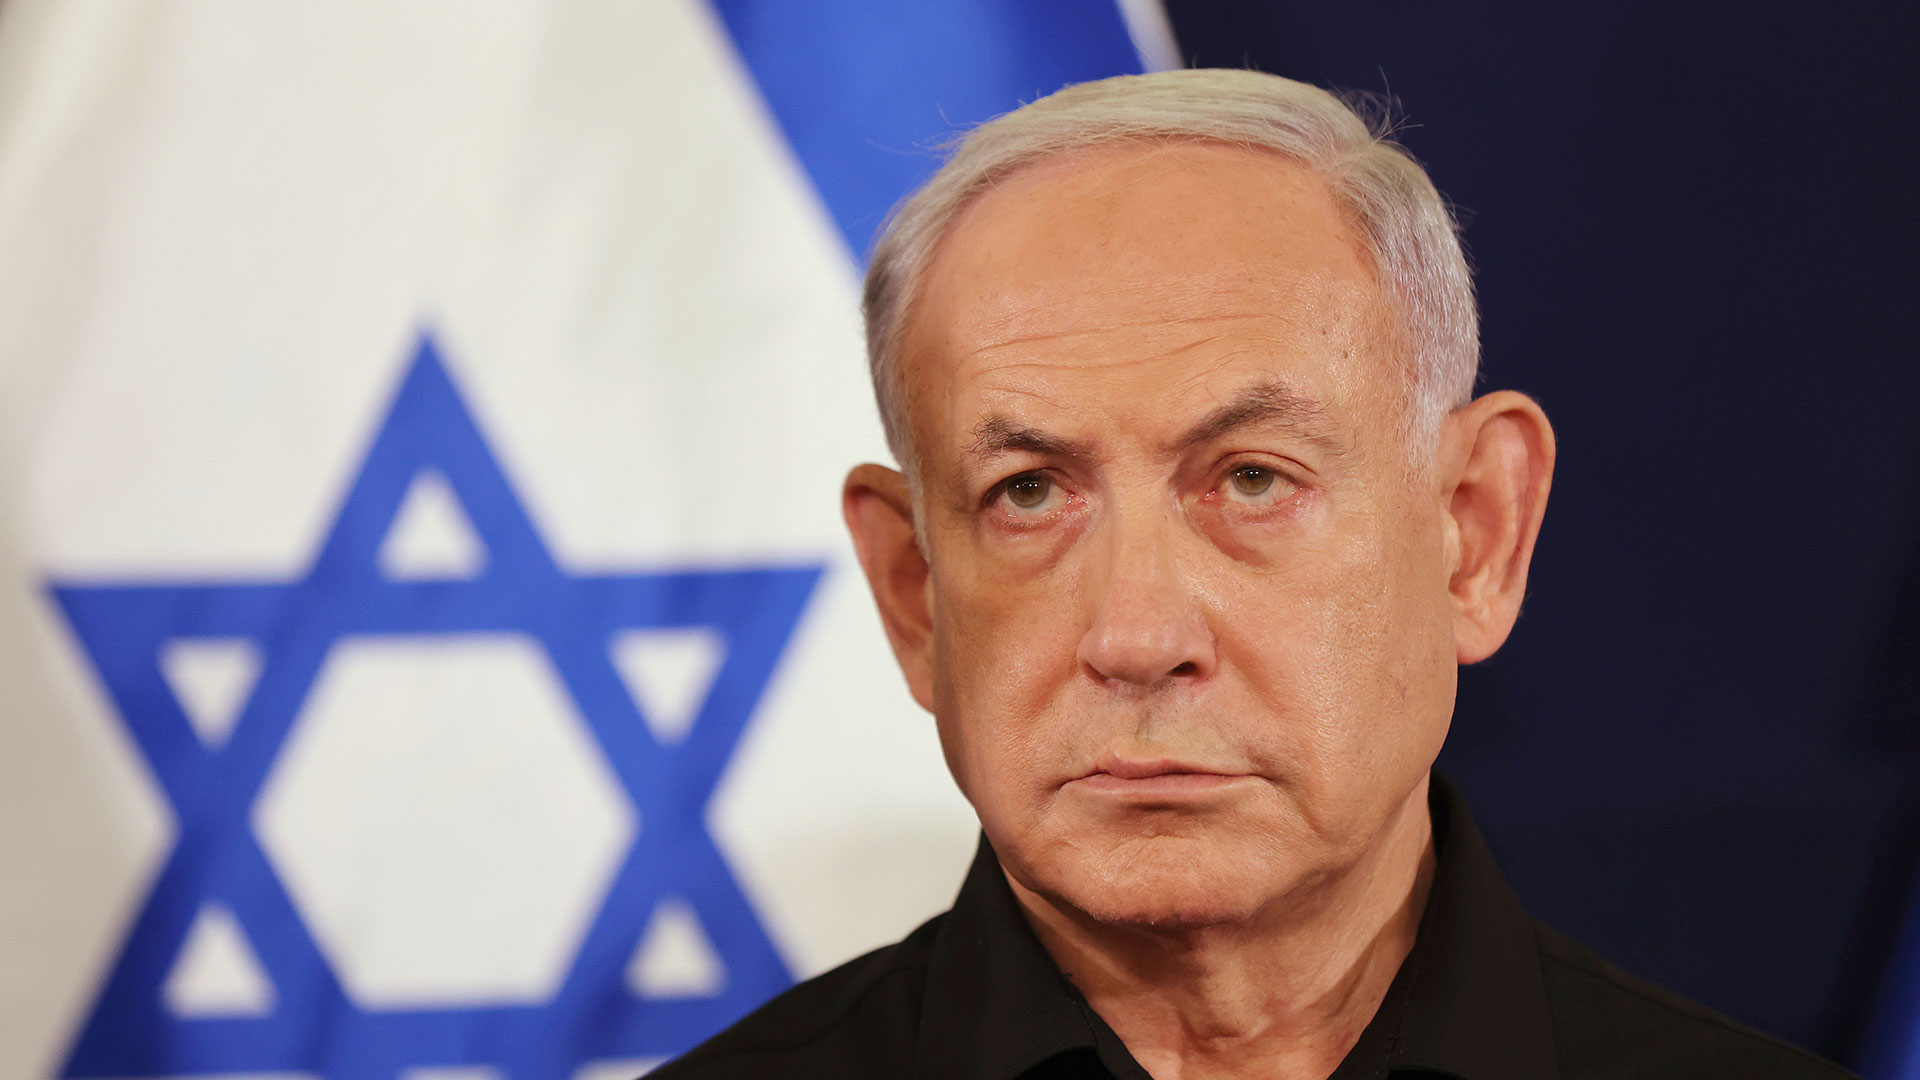 Ισραήλ: Ο Νετανιάχου λέει ότι οι σύμμαχοί του έχουν μικρή μνήμη σχετικά με την επίθεση της 7ης Οκτωβρίου